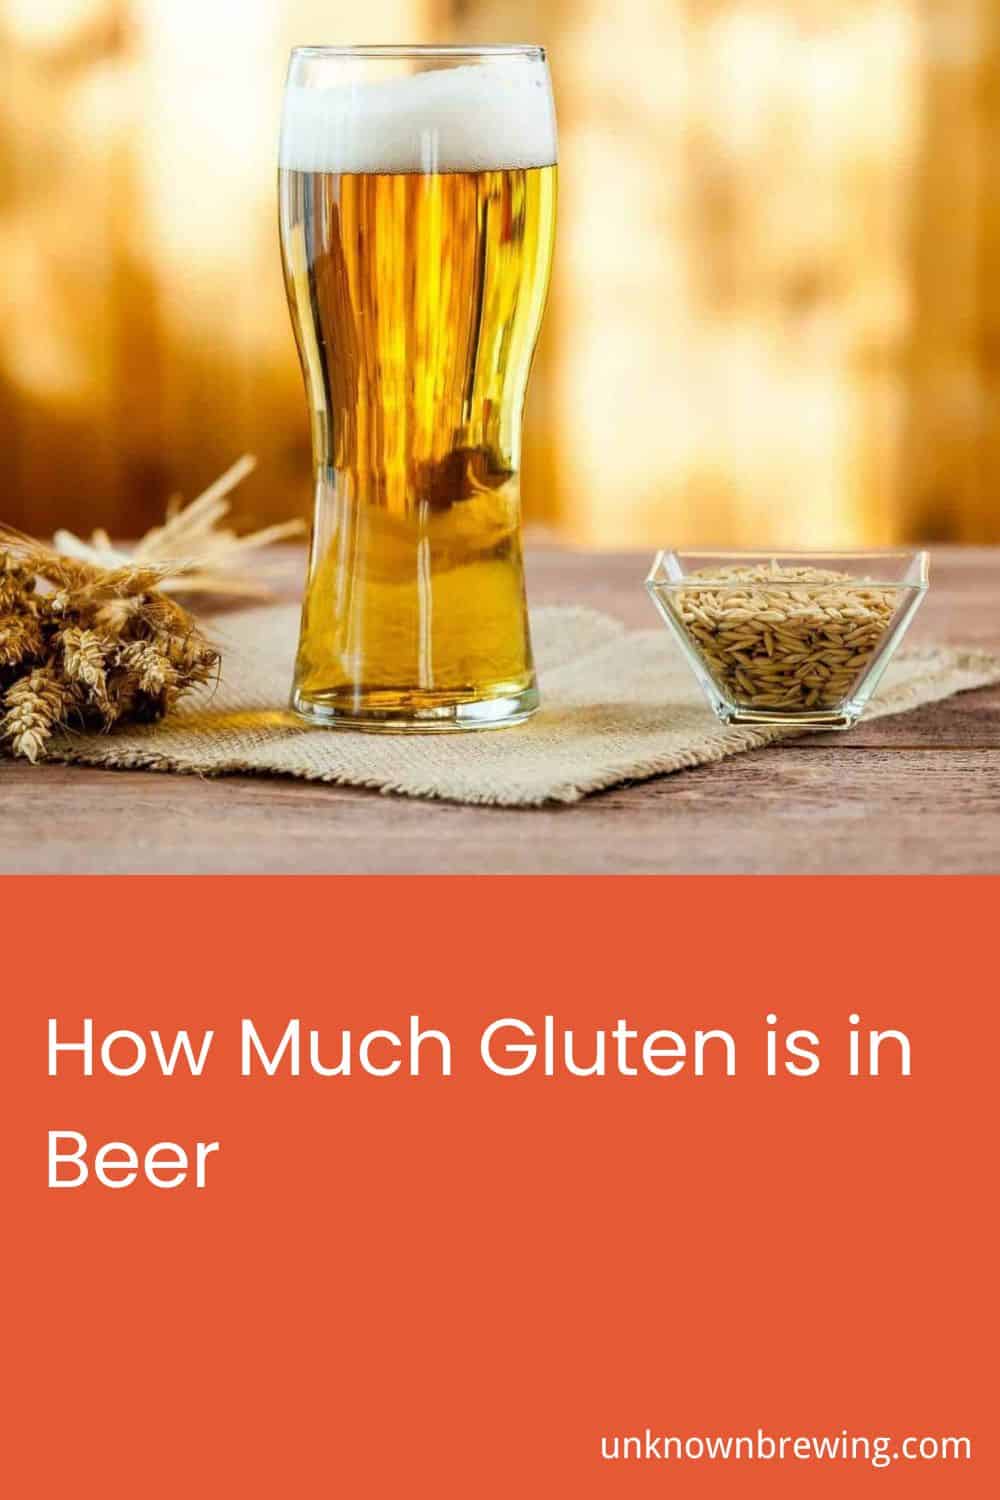 How Much Gluten is in Beer